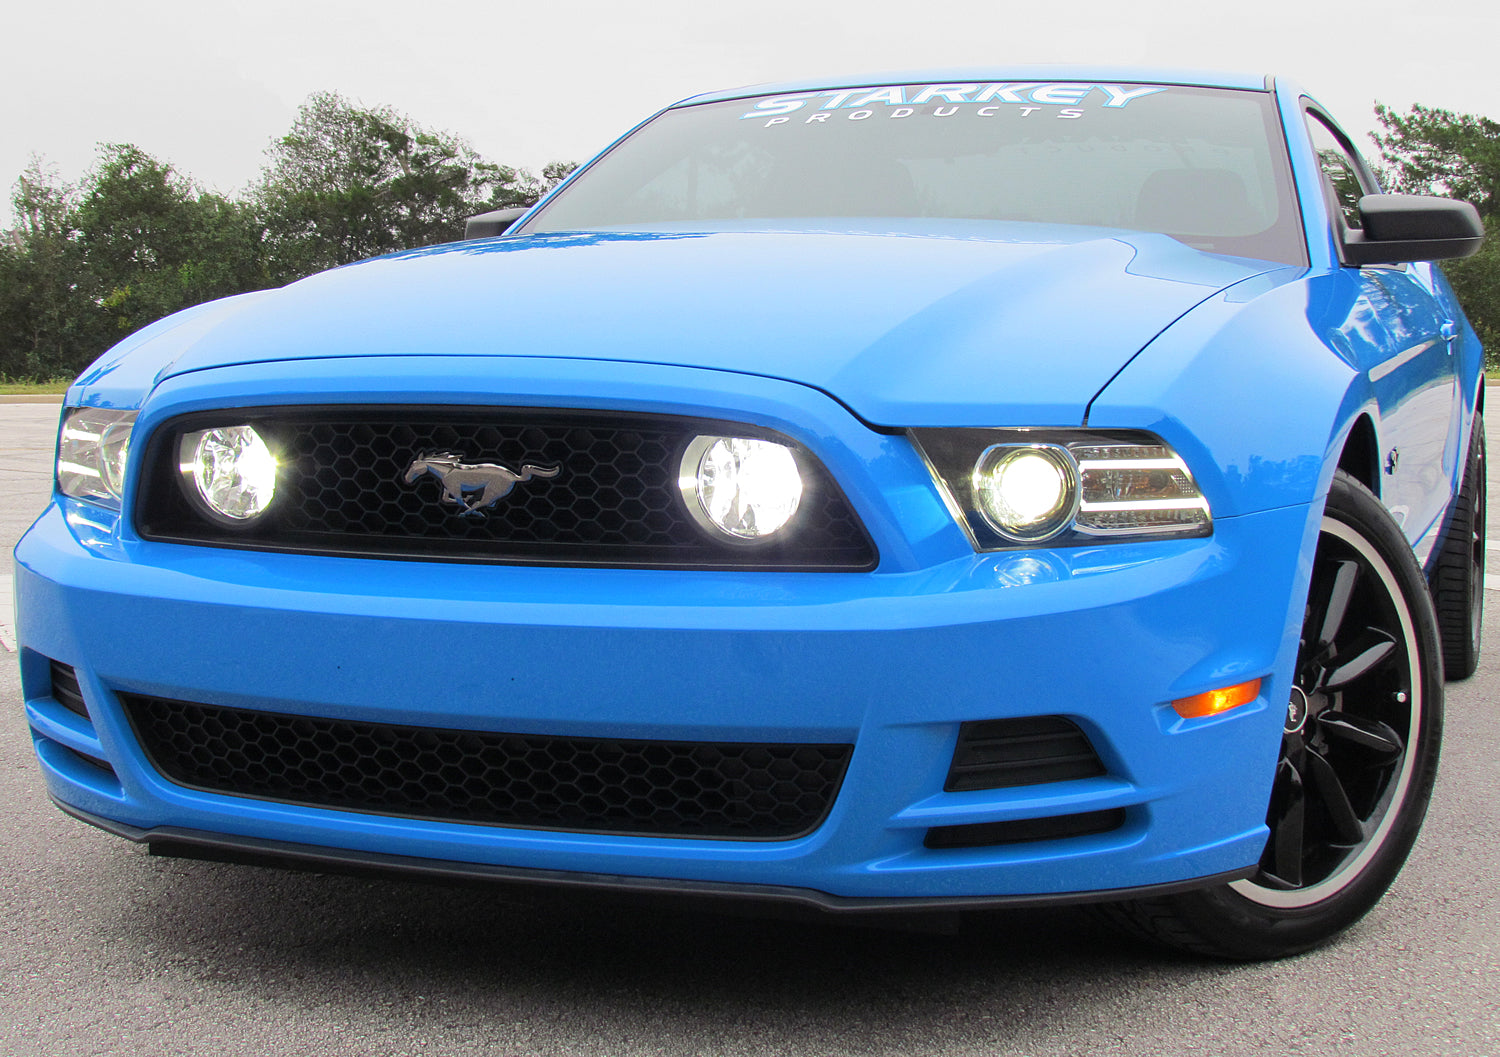 Mustang GT-Style LED Fog Light Kit - Fits V6 and Boss 302 (2013-2014)